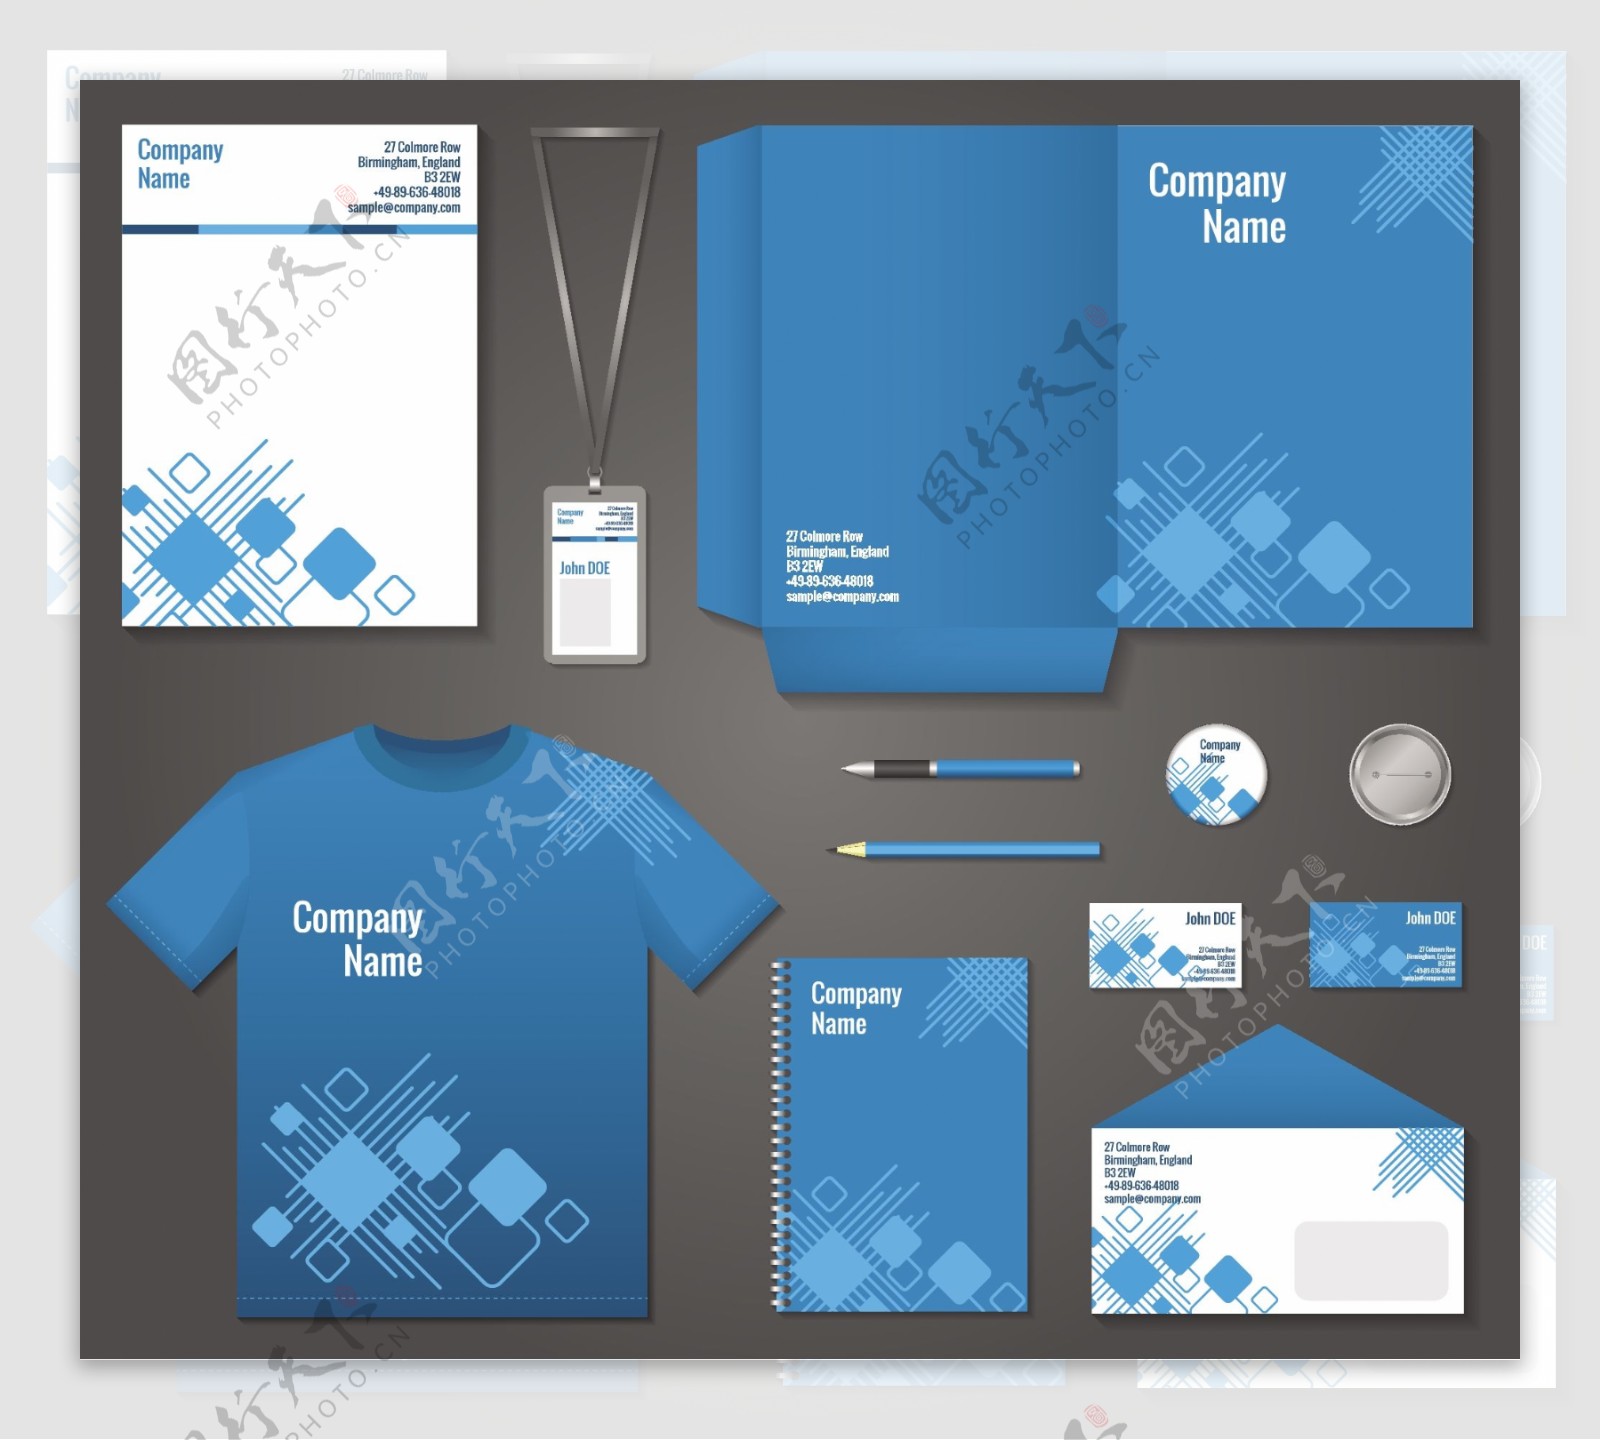 蓝色和白色几何技术企业文具模板为企业的身份和品牌设置矢量插图